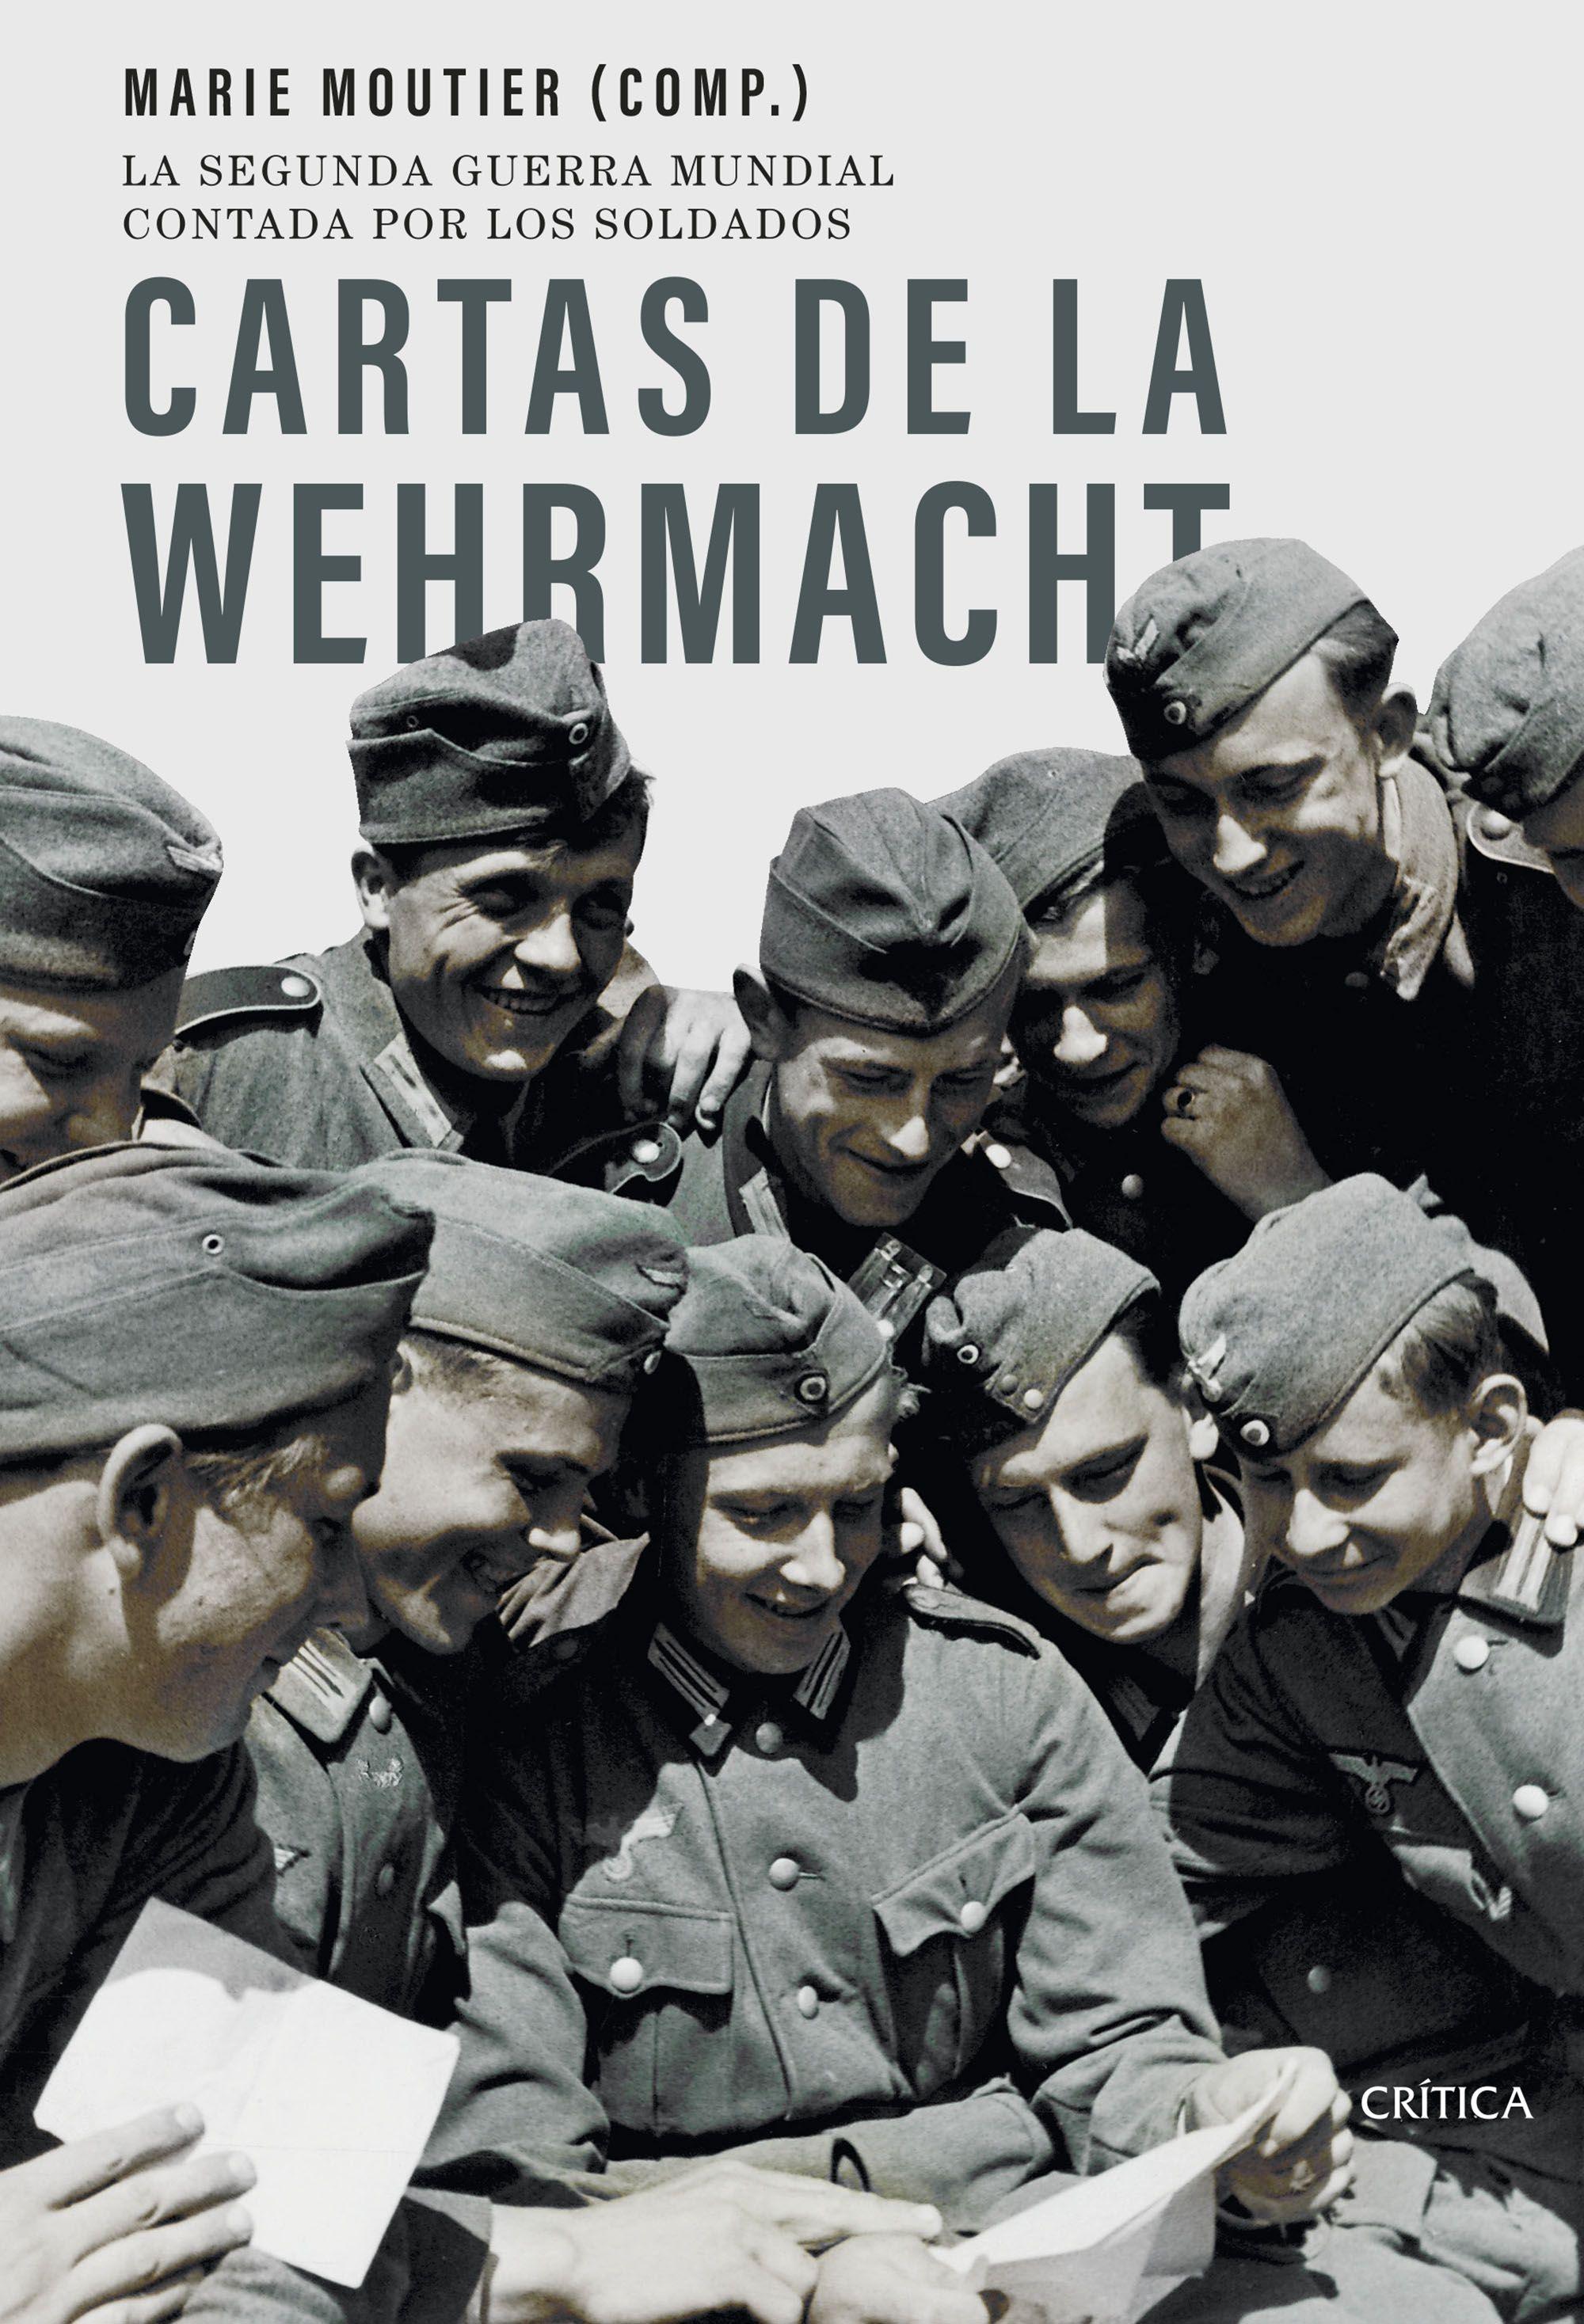 Cartas de la Wehrmacht "La Segunda Guerra Mundial Contada por los Soldados". 